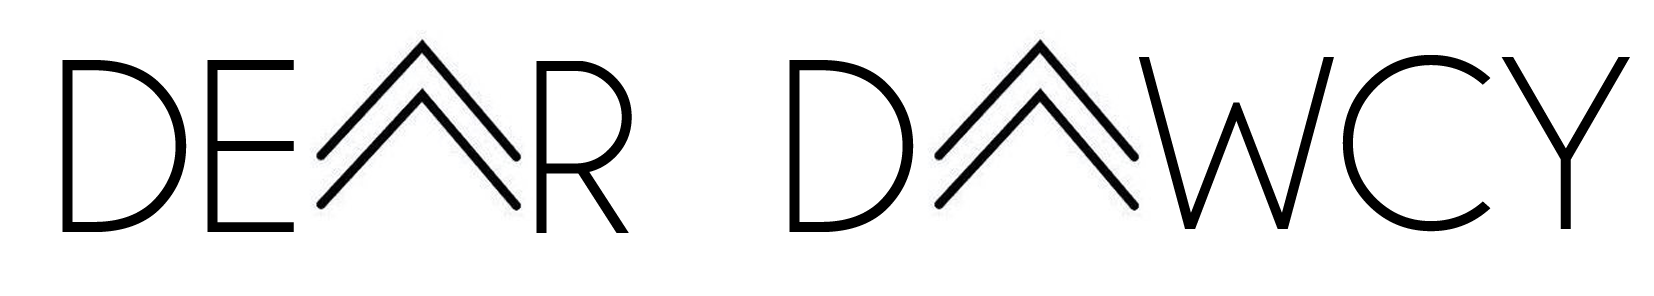 dear dawcy logo